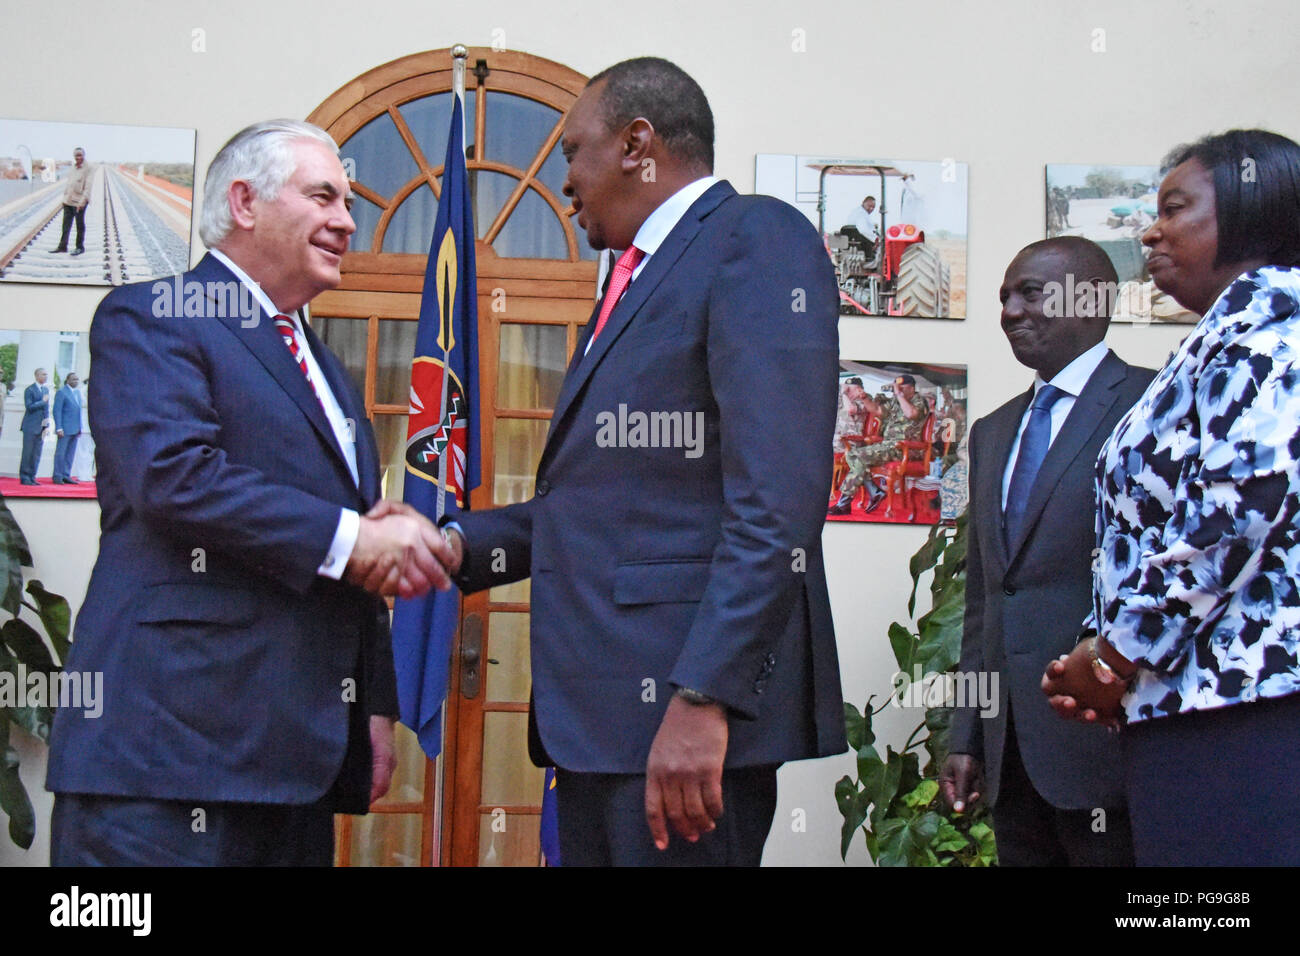 La secrétaire d'État des États-Unis, Rex Tillerson, serre la main avec le président Kenyan Uhuru Kenyatta après leur rencontre à la State House à Nairobi, au Kenya, le 9 mars 2018. Banque D'Images